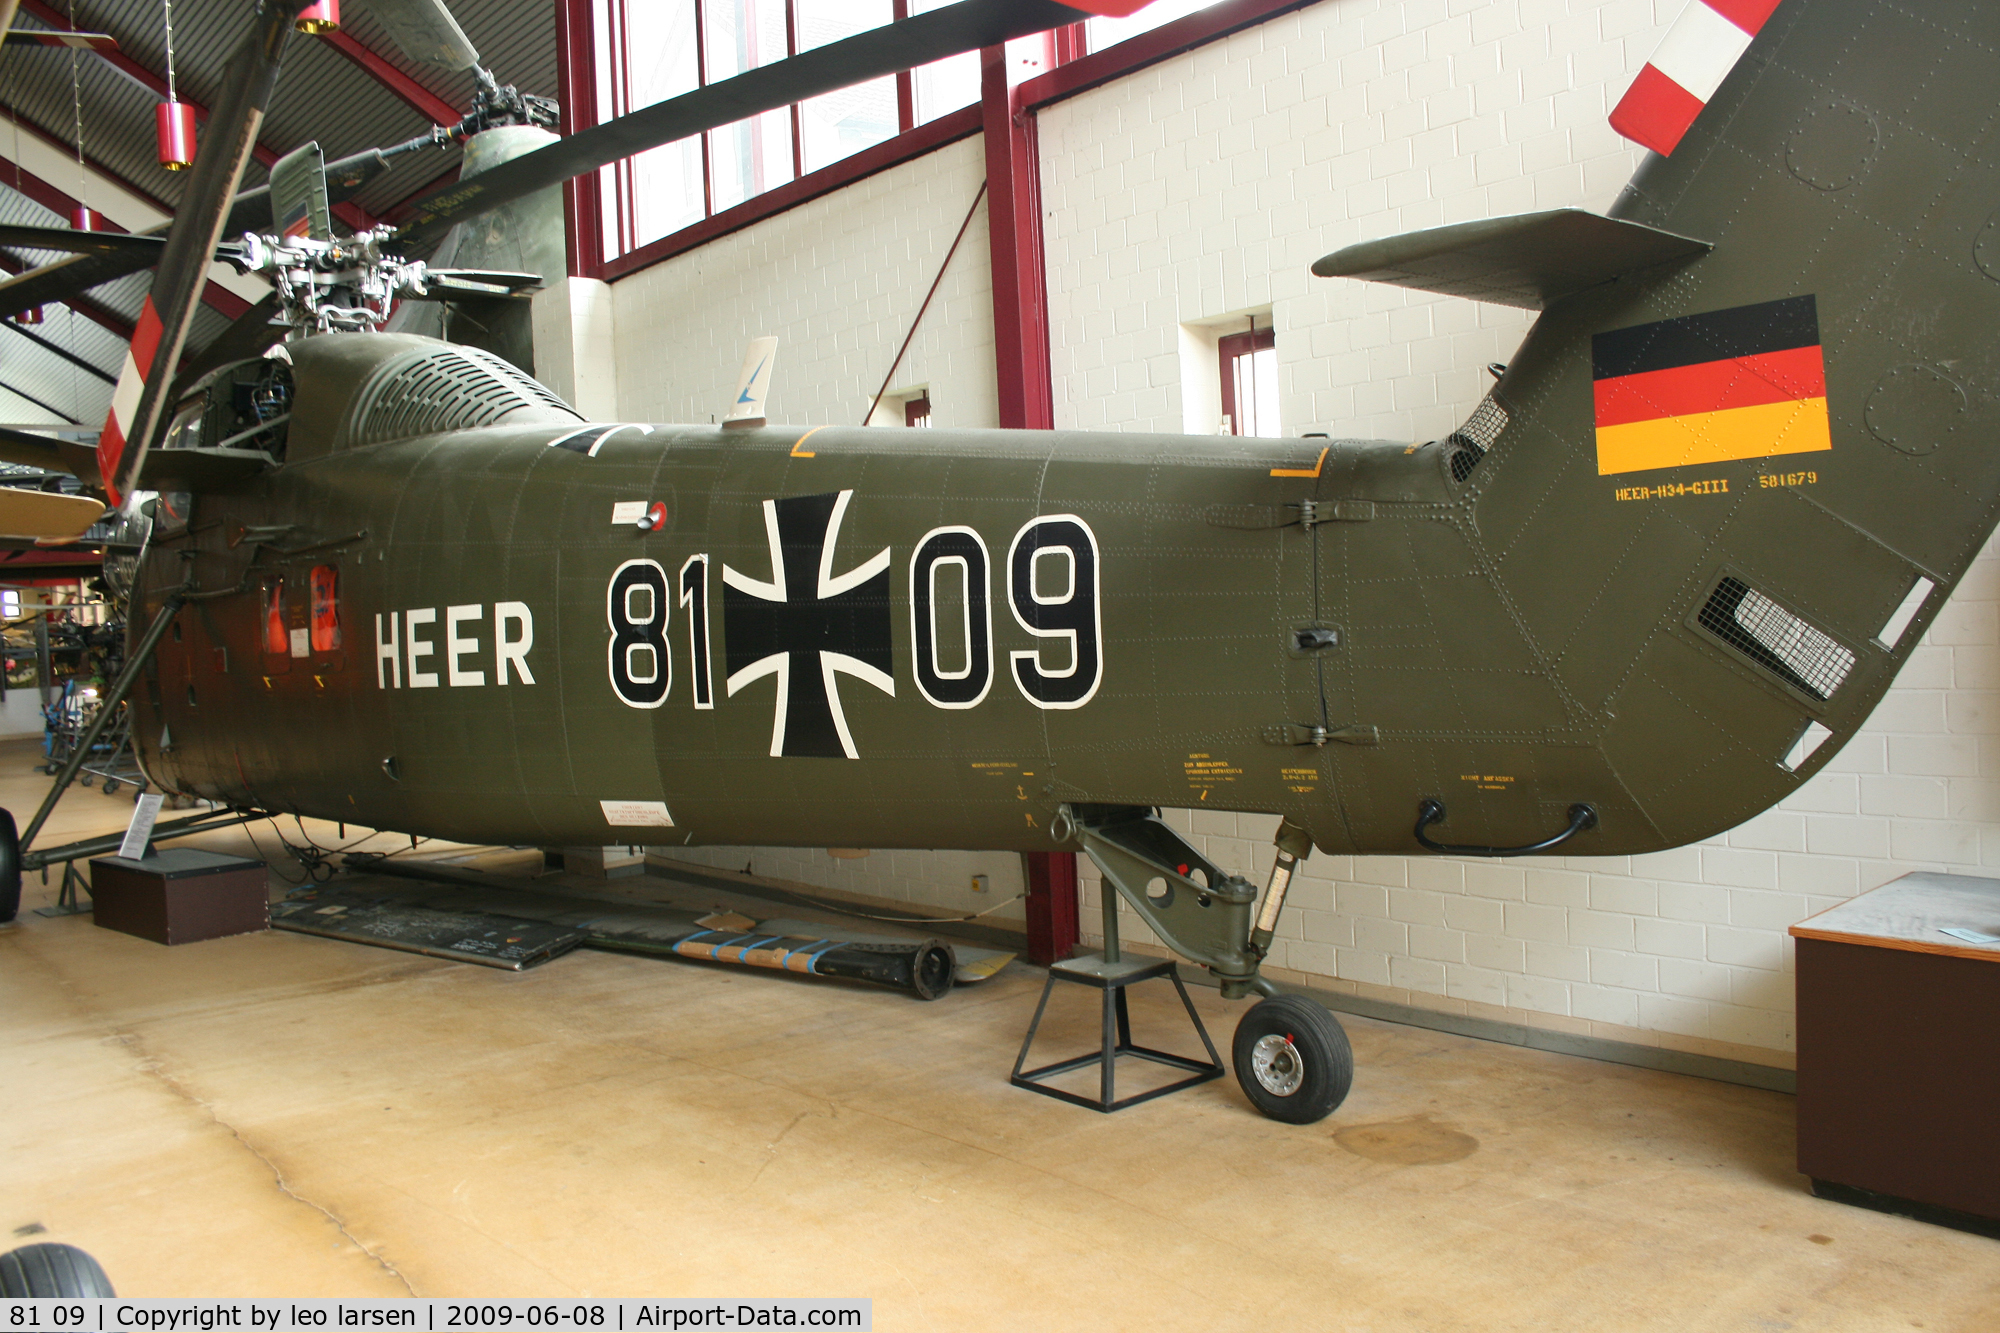 81 09, Sikorsky H-34G Choctaw C/N 58-1679, Bückeburg Helikopter museum 
8.6.09